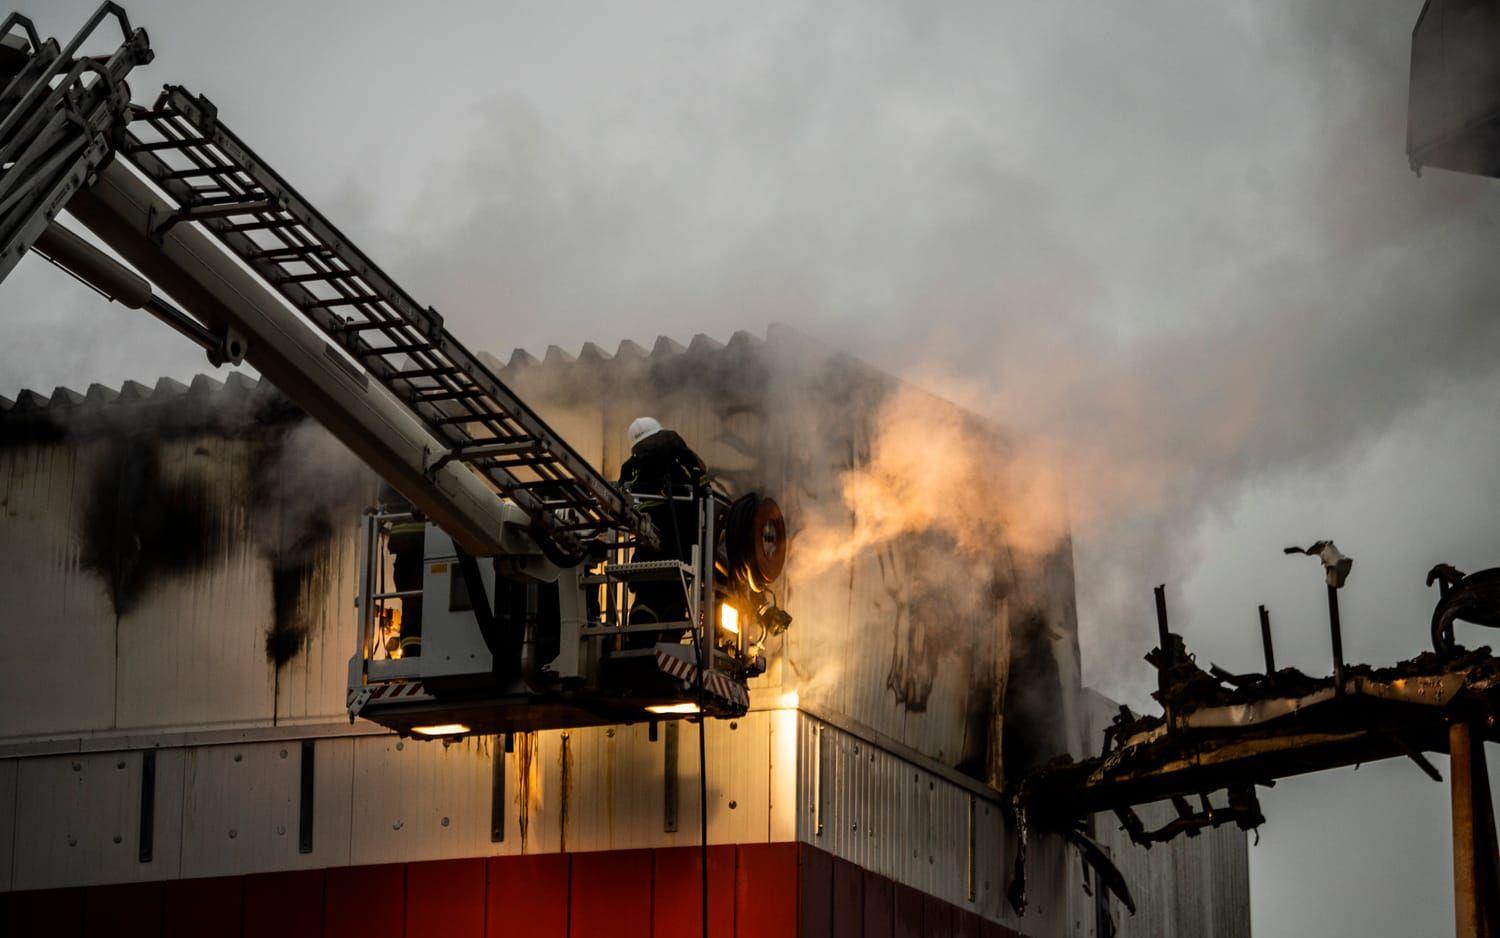 På morgonen 15 oktober förra året började det brinna kraftigt i pannkaksfabriken. 